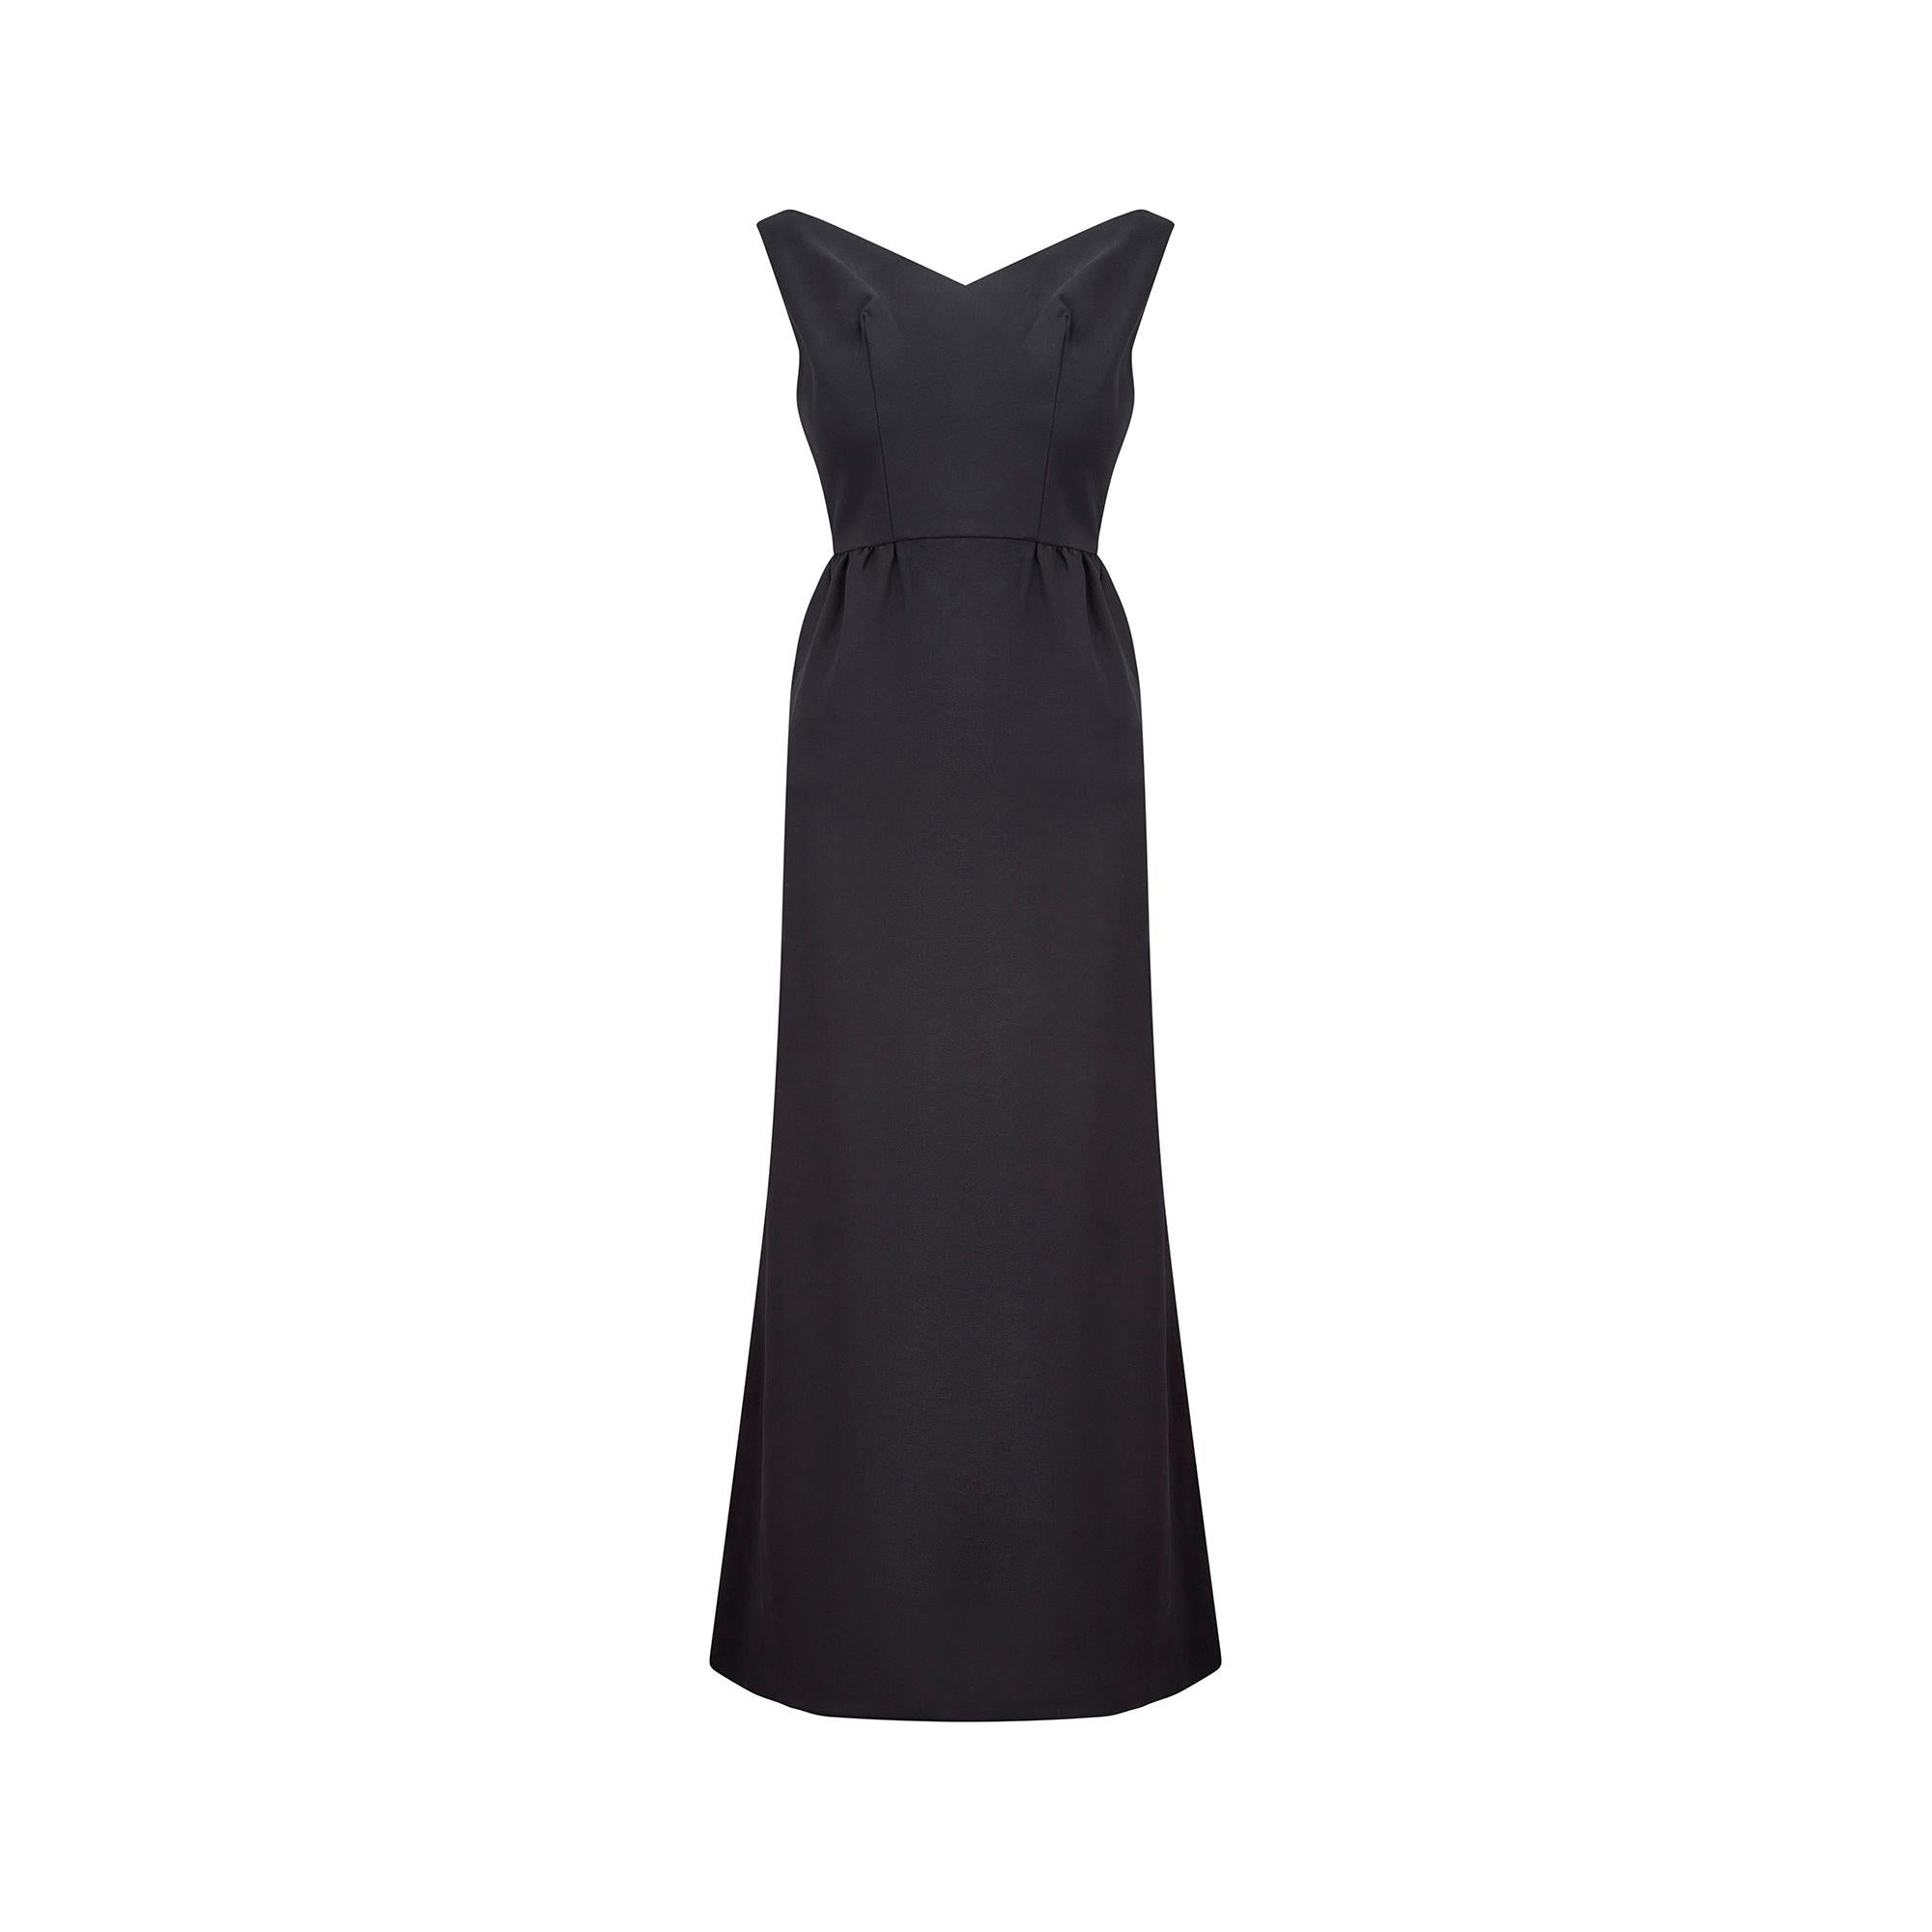 Dieses klassische, ärmellose Kleid aus schwarzem Crêpe wurde in den 1960er Jahren hergestellt und ist in einem ausgezeichneten Vintage-Zustand. Ein V-förmiger, weiter Ausschnitt enthüllt das Dekolleté. Zarte Plisseefalten am Rücken und ein